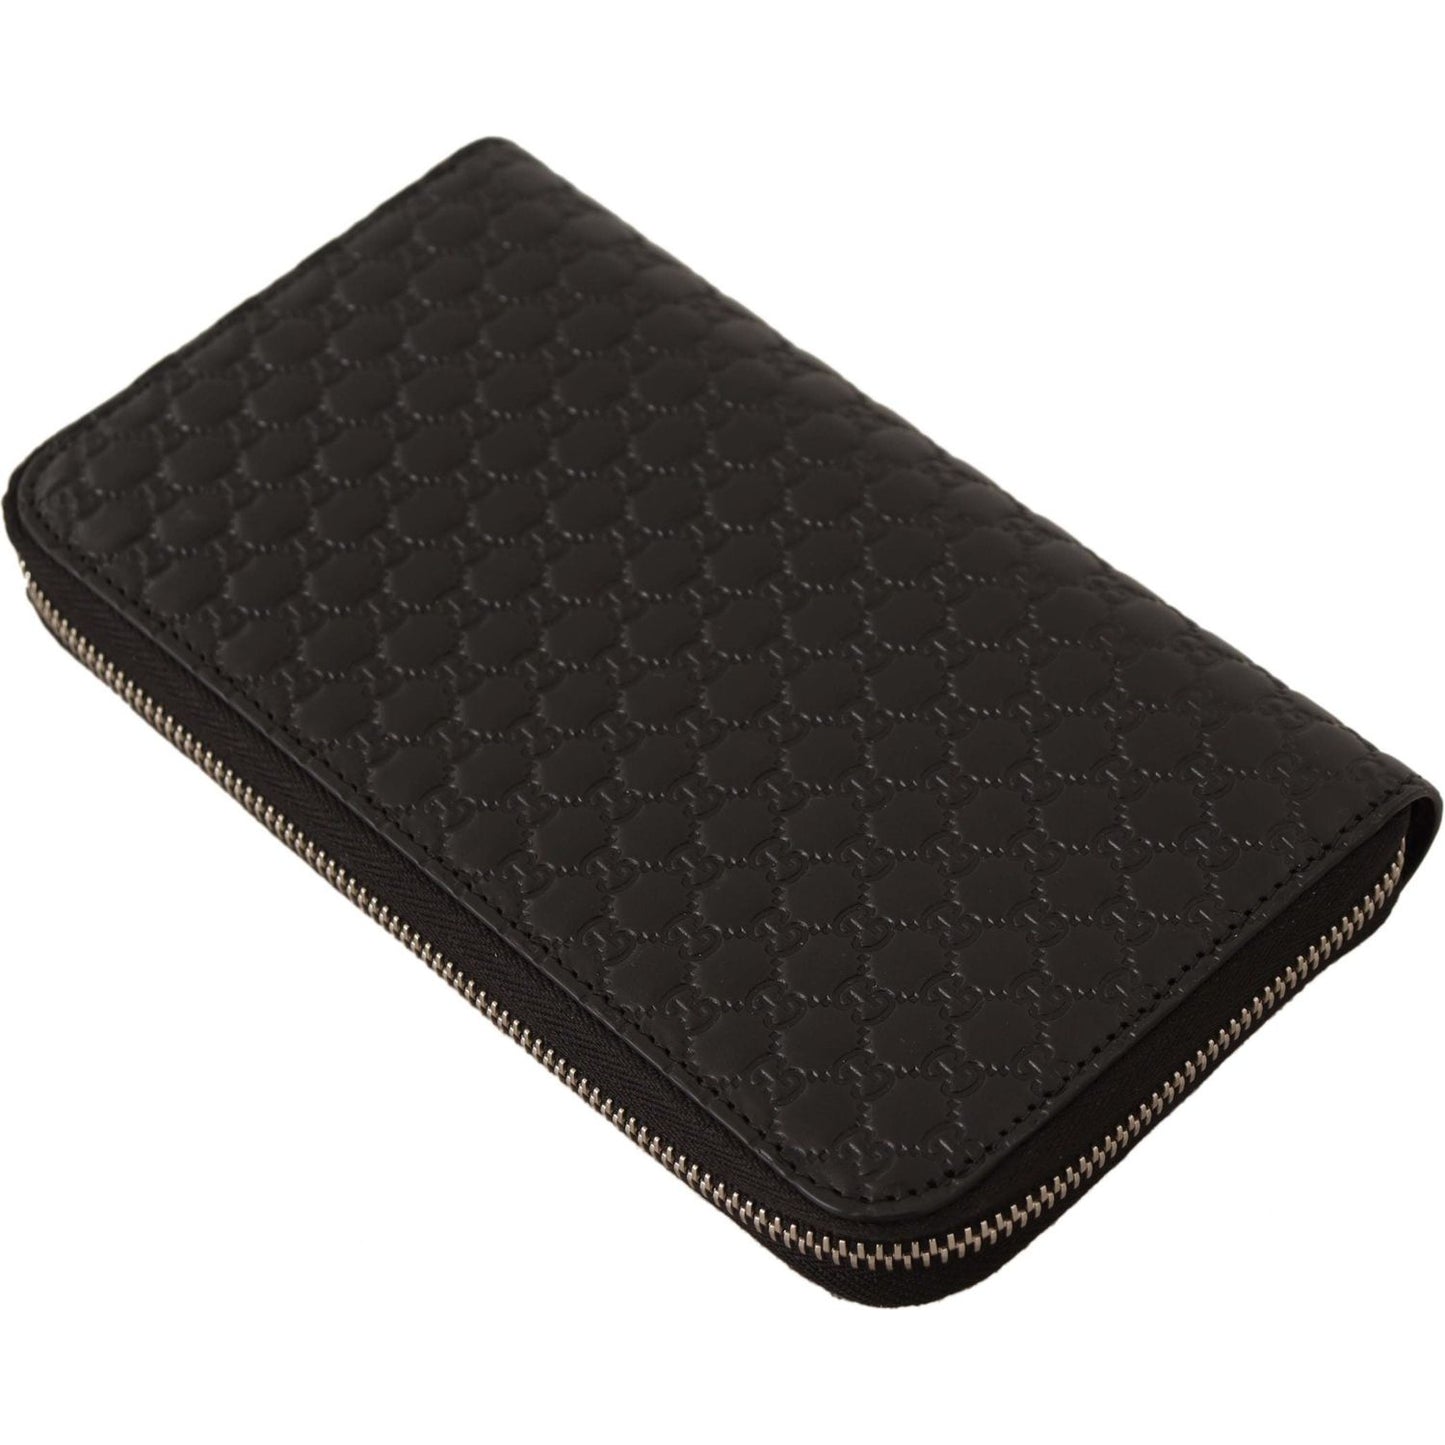 Gucci Elegant Black Leather Zip-Around Wallet black-wallet-microguccissima-leather-zipper-wallet